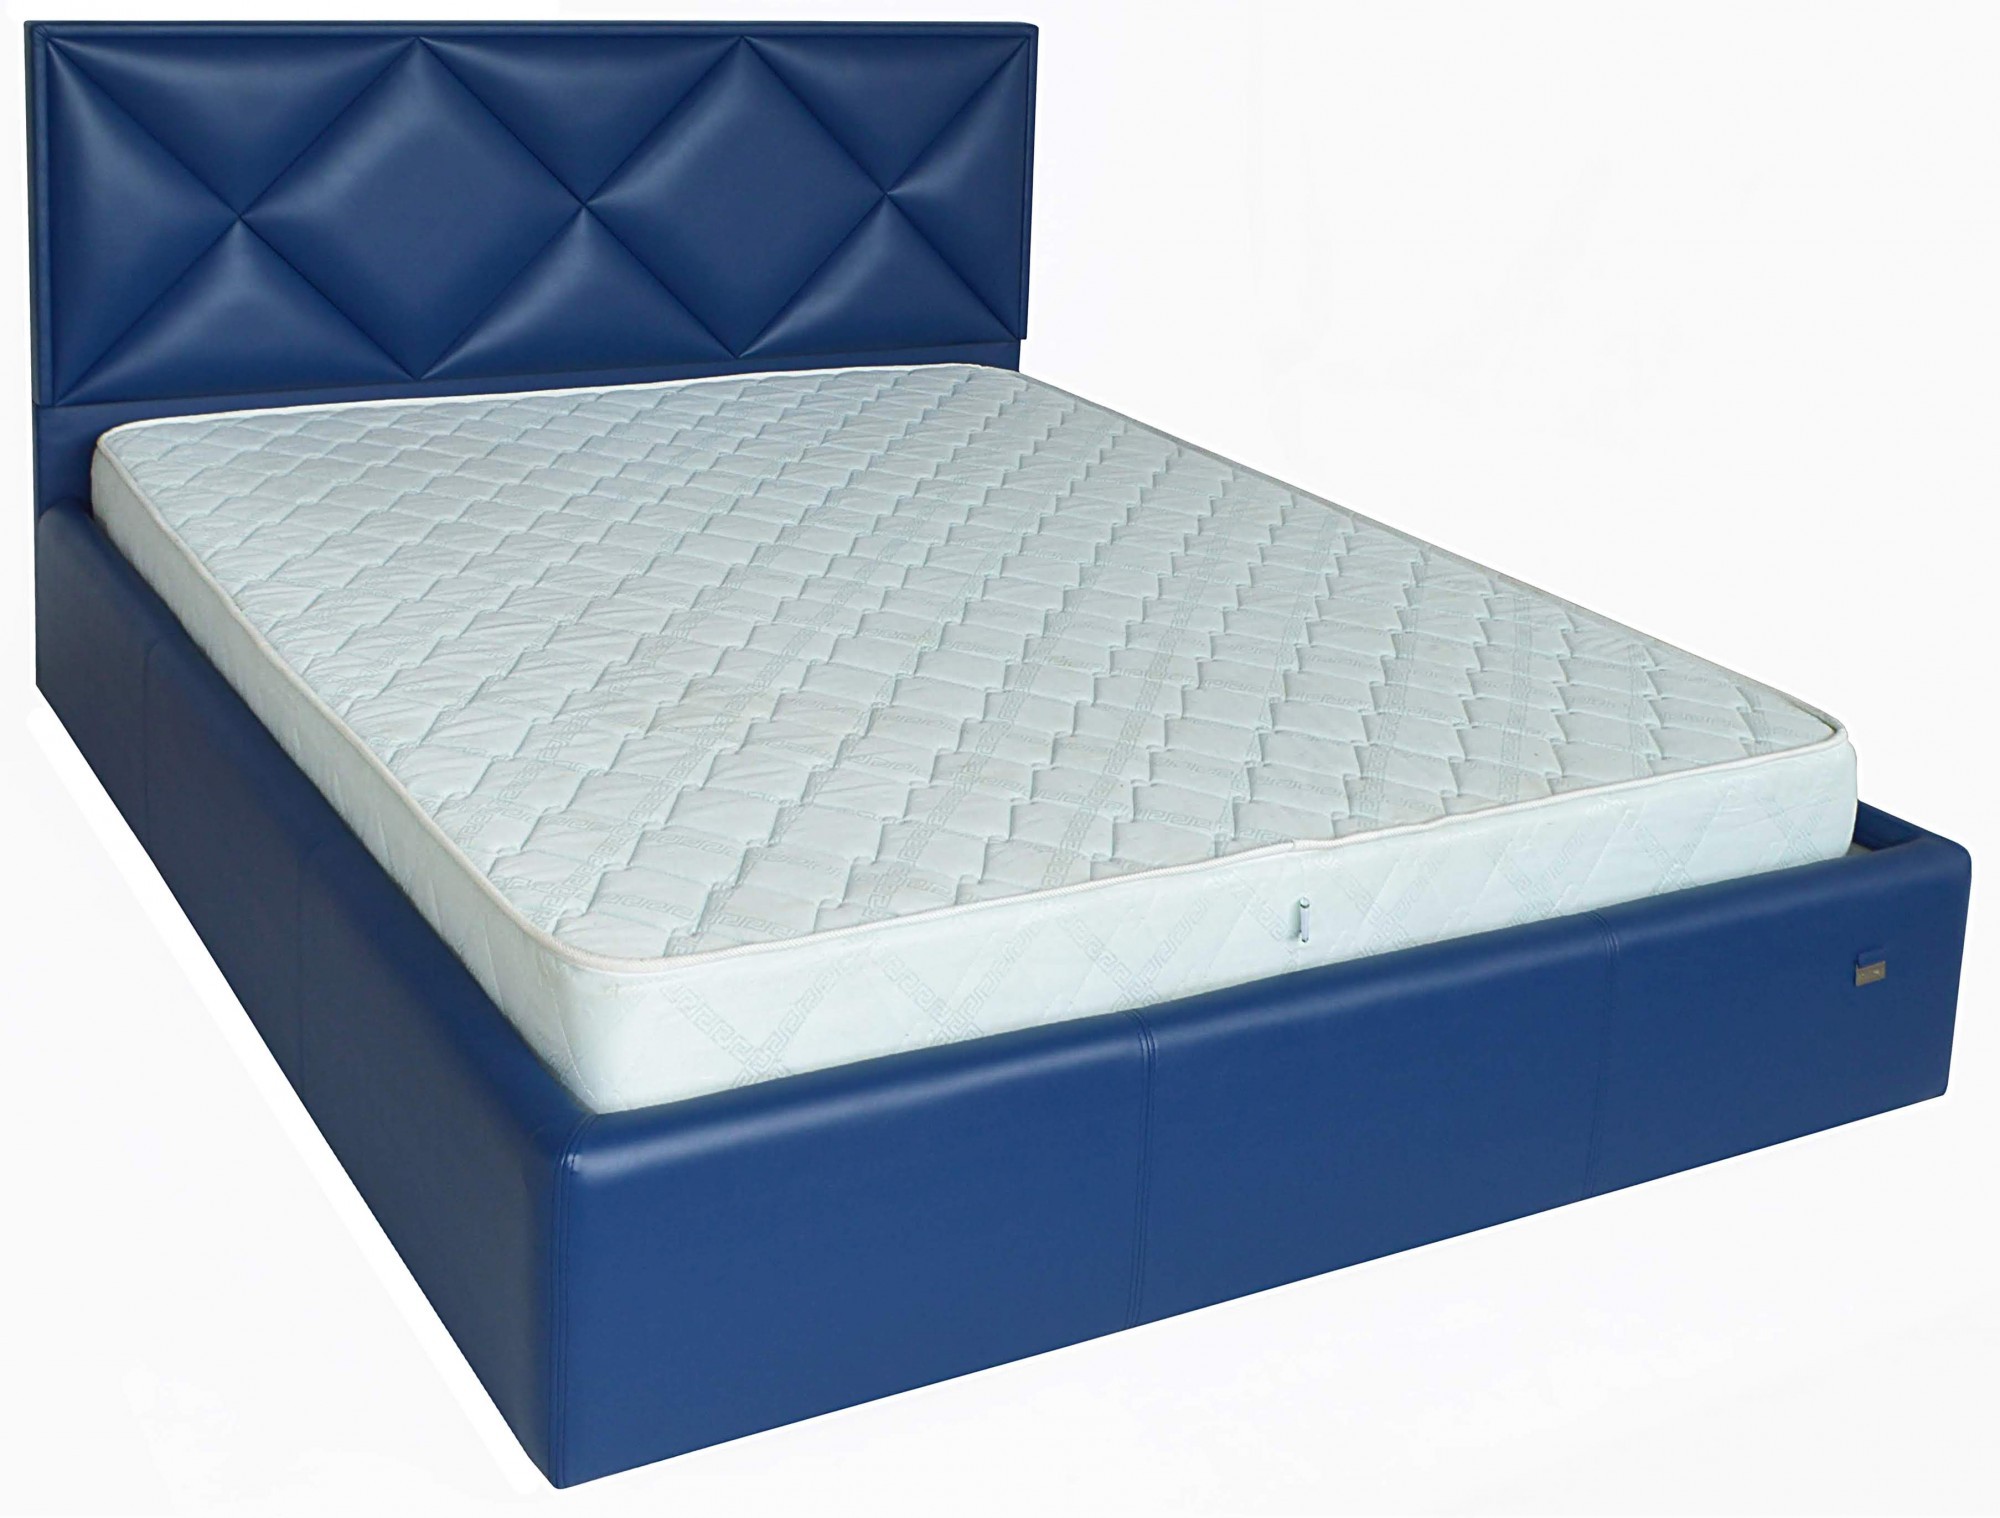 

Кровать Двуспальная Leeds Standart 160 х 200 см Boom 21 Синяя